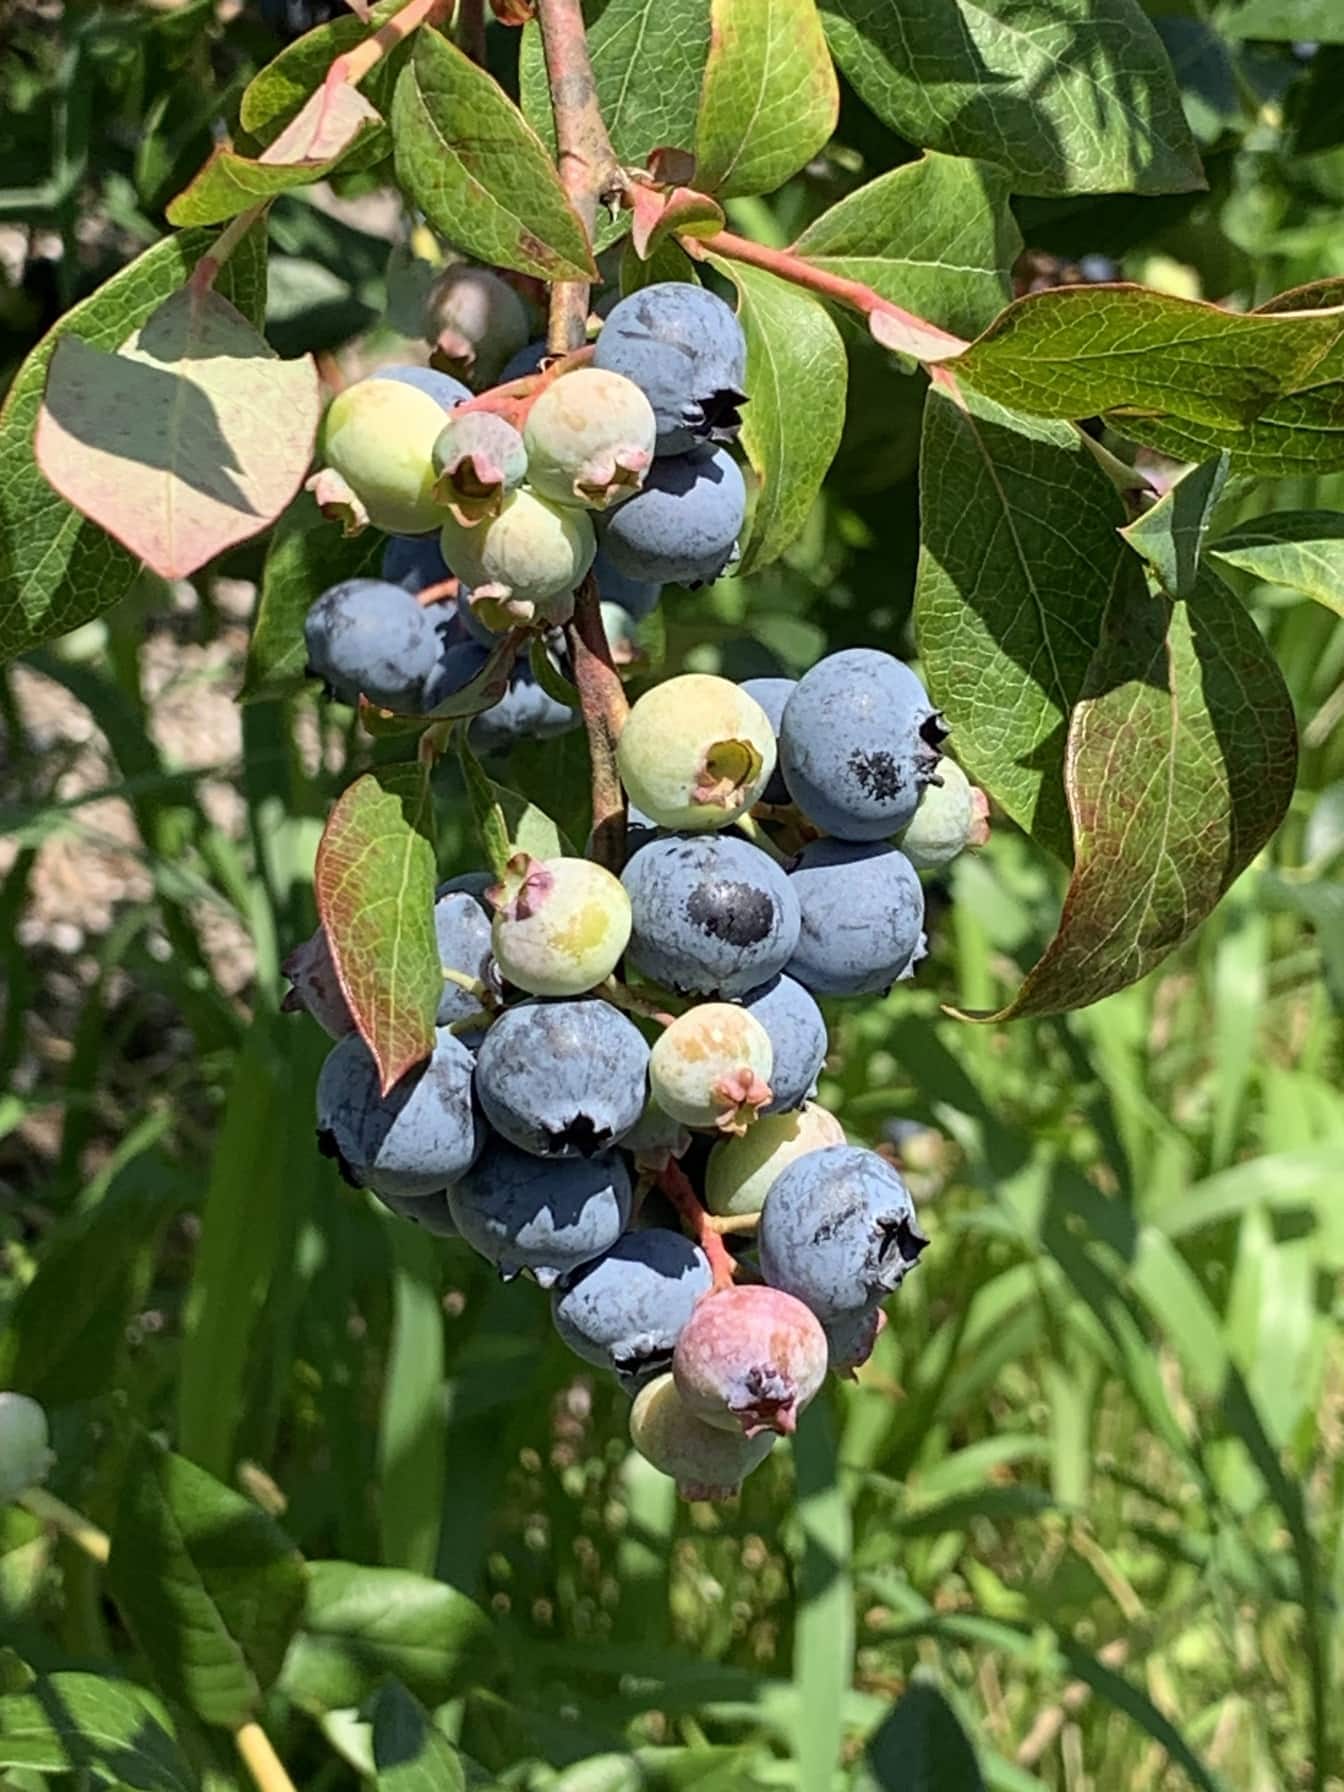 Blueberry matang di semak-semak ditampilkan dalam kelompok di pertanian blueberry